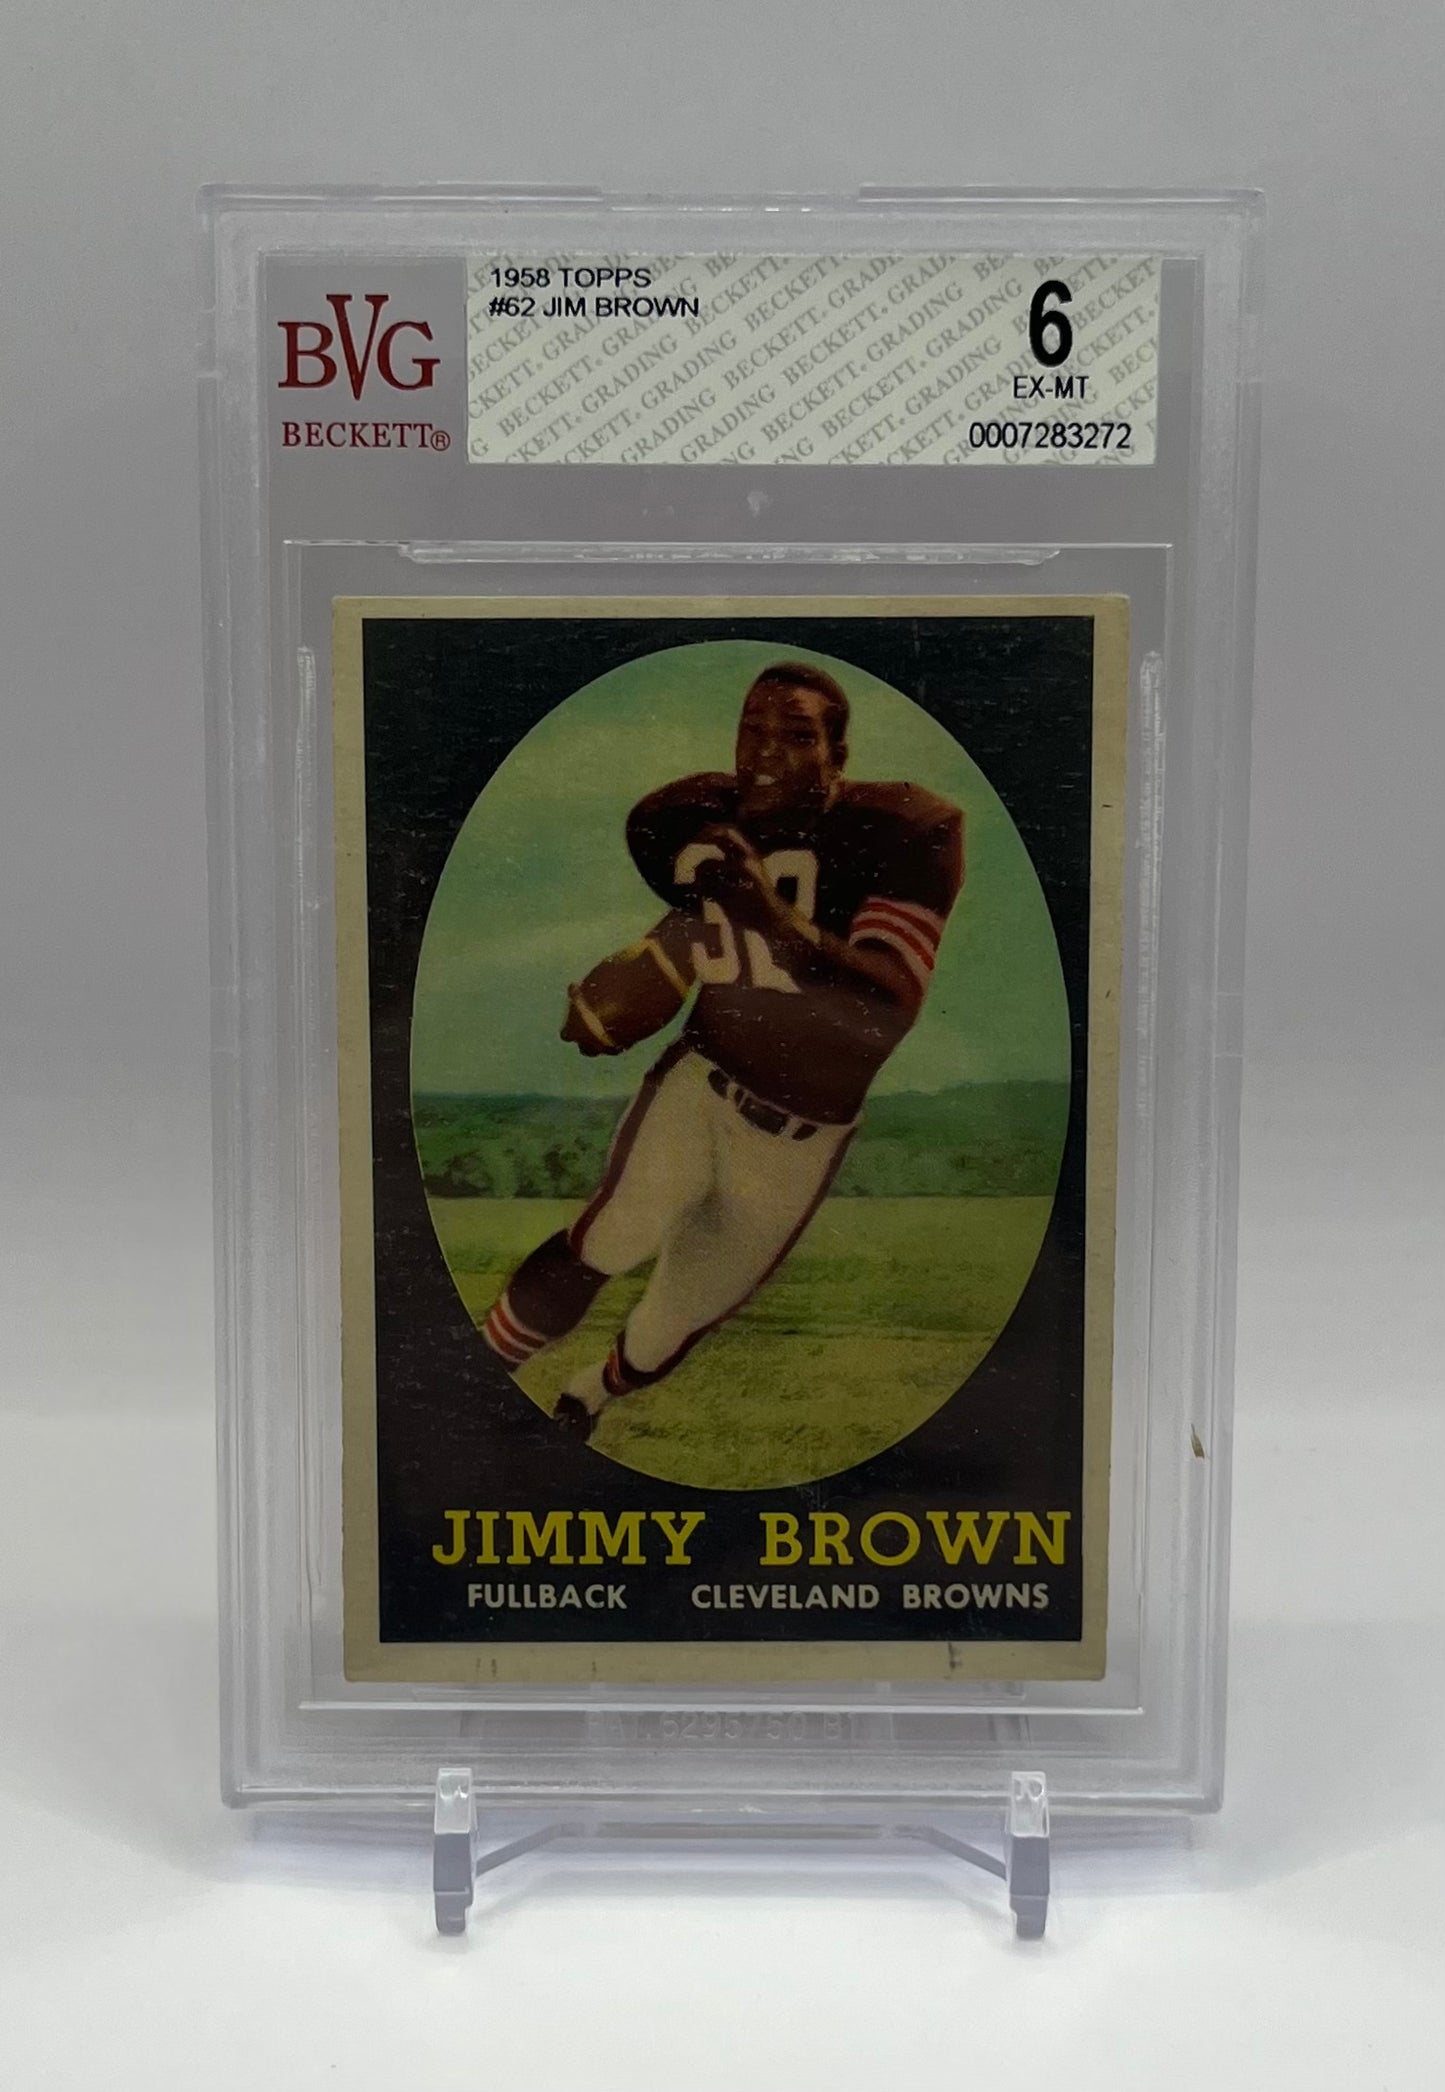 1958 #62 JIM BROWN TOPPS - BECKETT 6 EX-MT